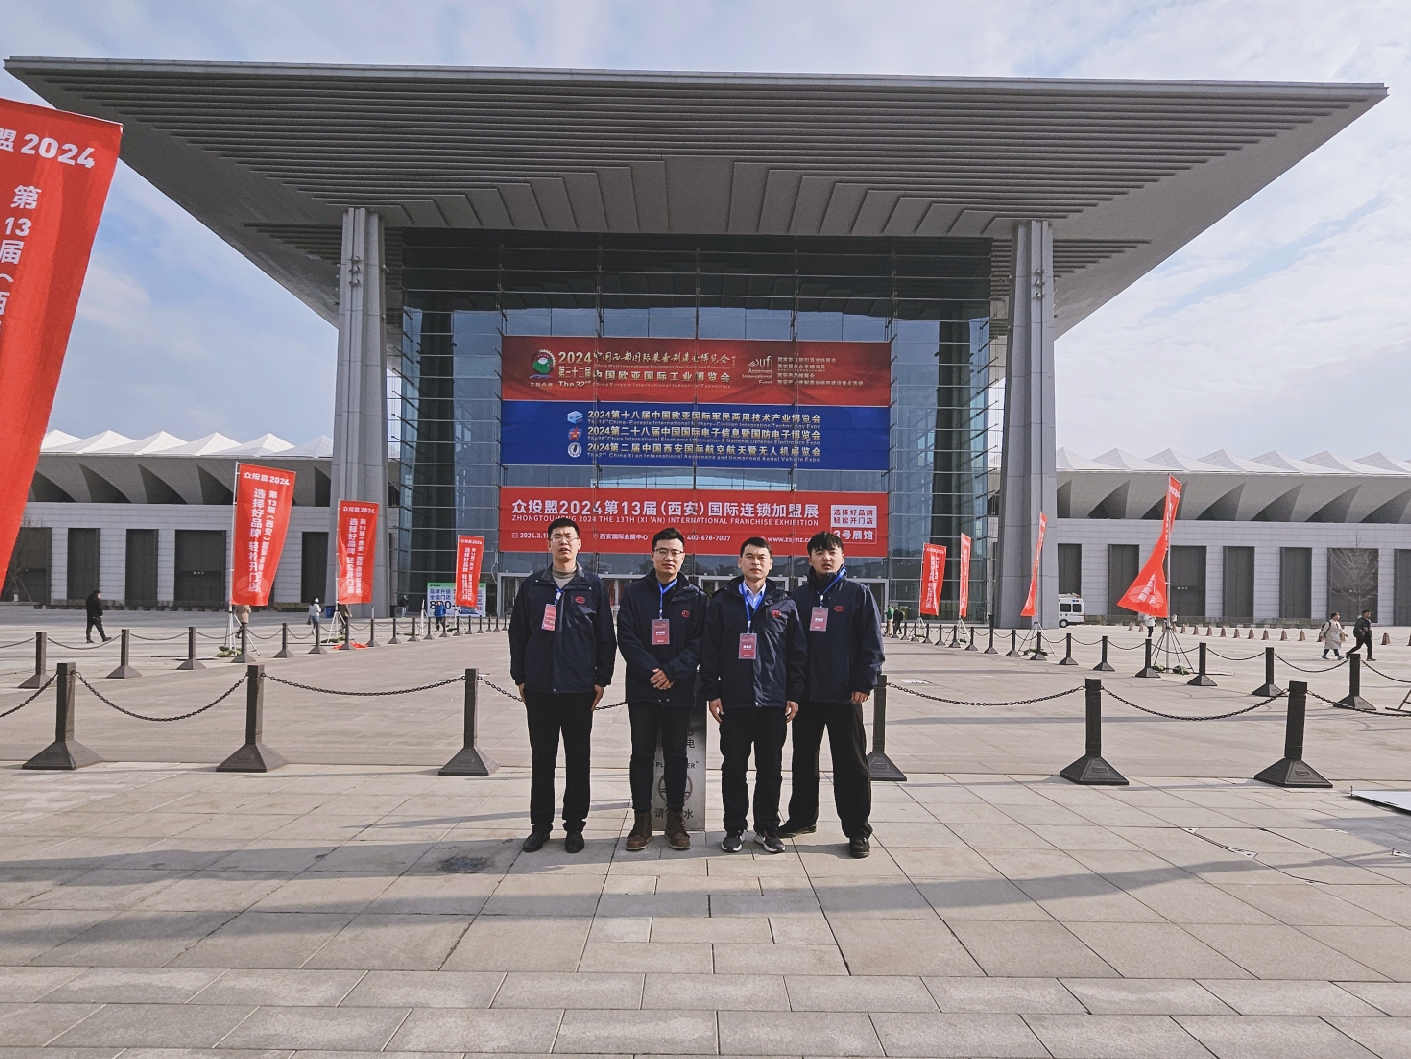 菲特集团旗下山西观复智能科技有限公司亮相第32届中国西部国际装备制造业博览会暨欧